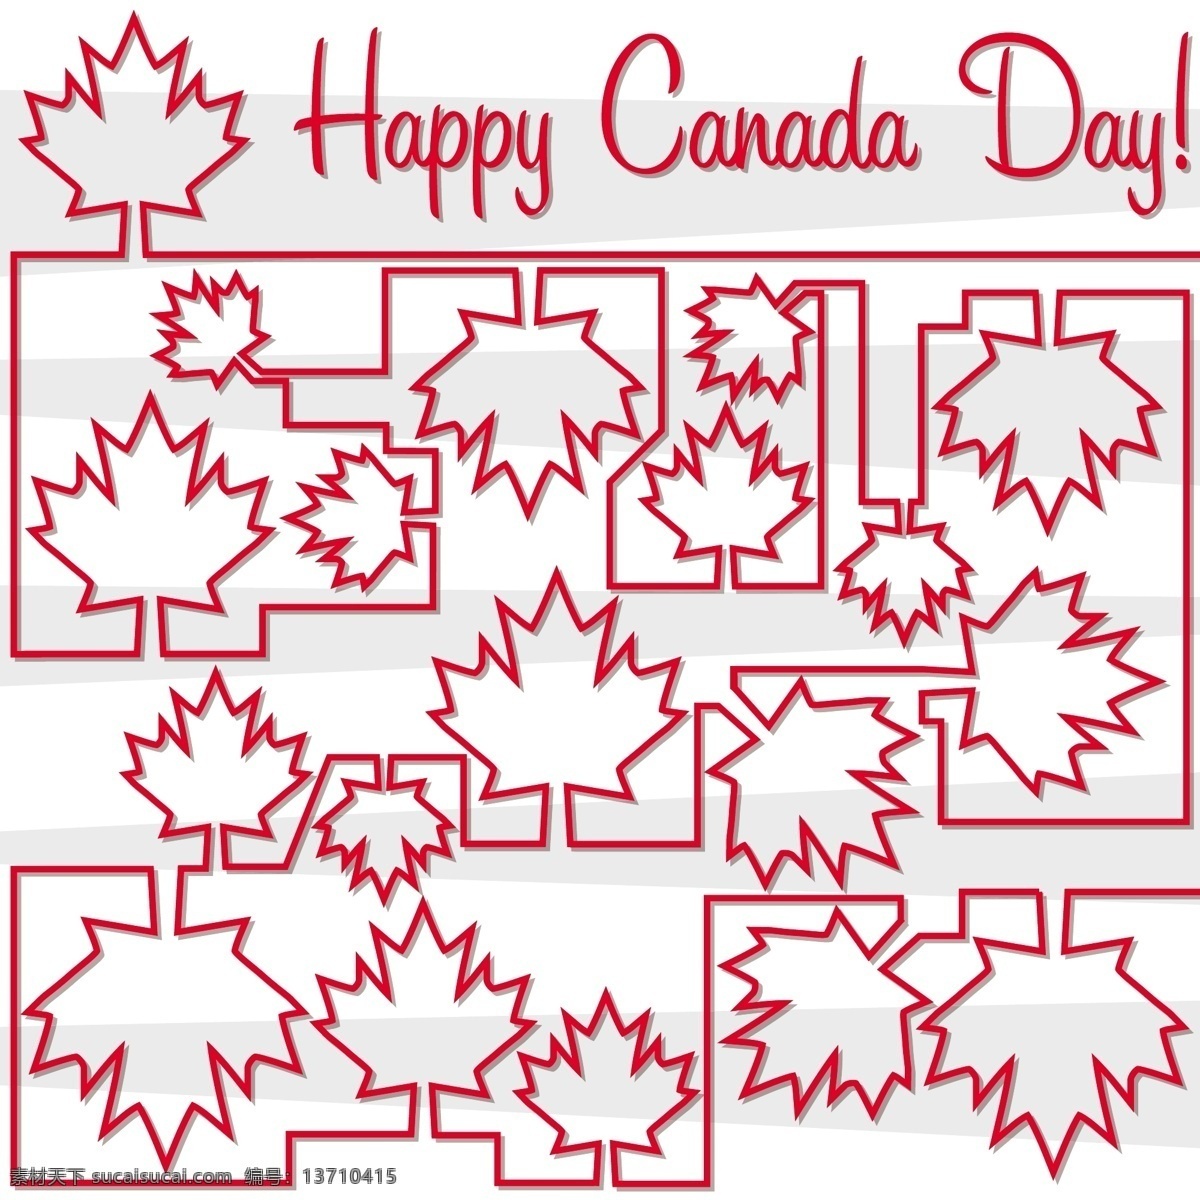 枫叶 迷宫 加拿大 国庆节 快乐 卡 矢量 格式 矢量图 日常生活